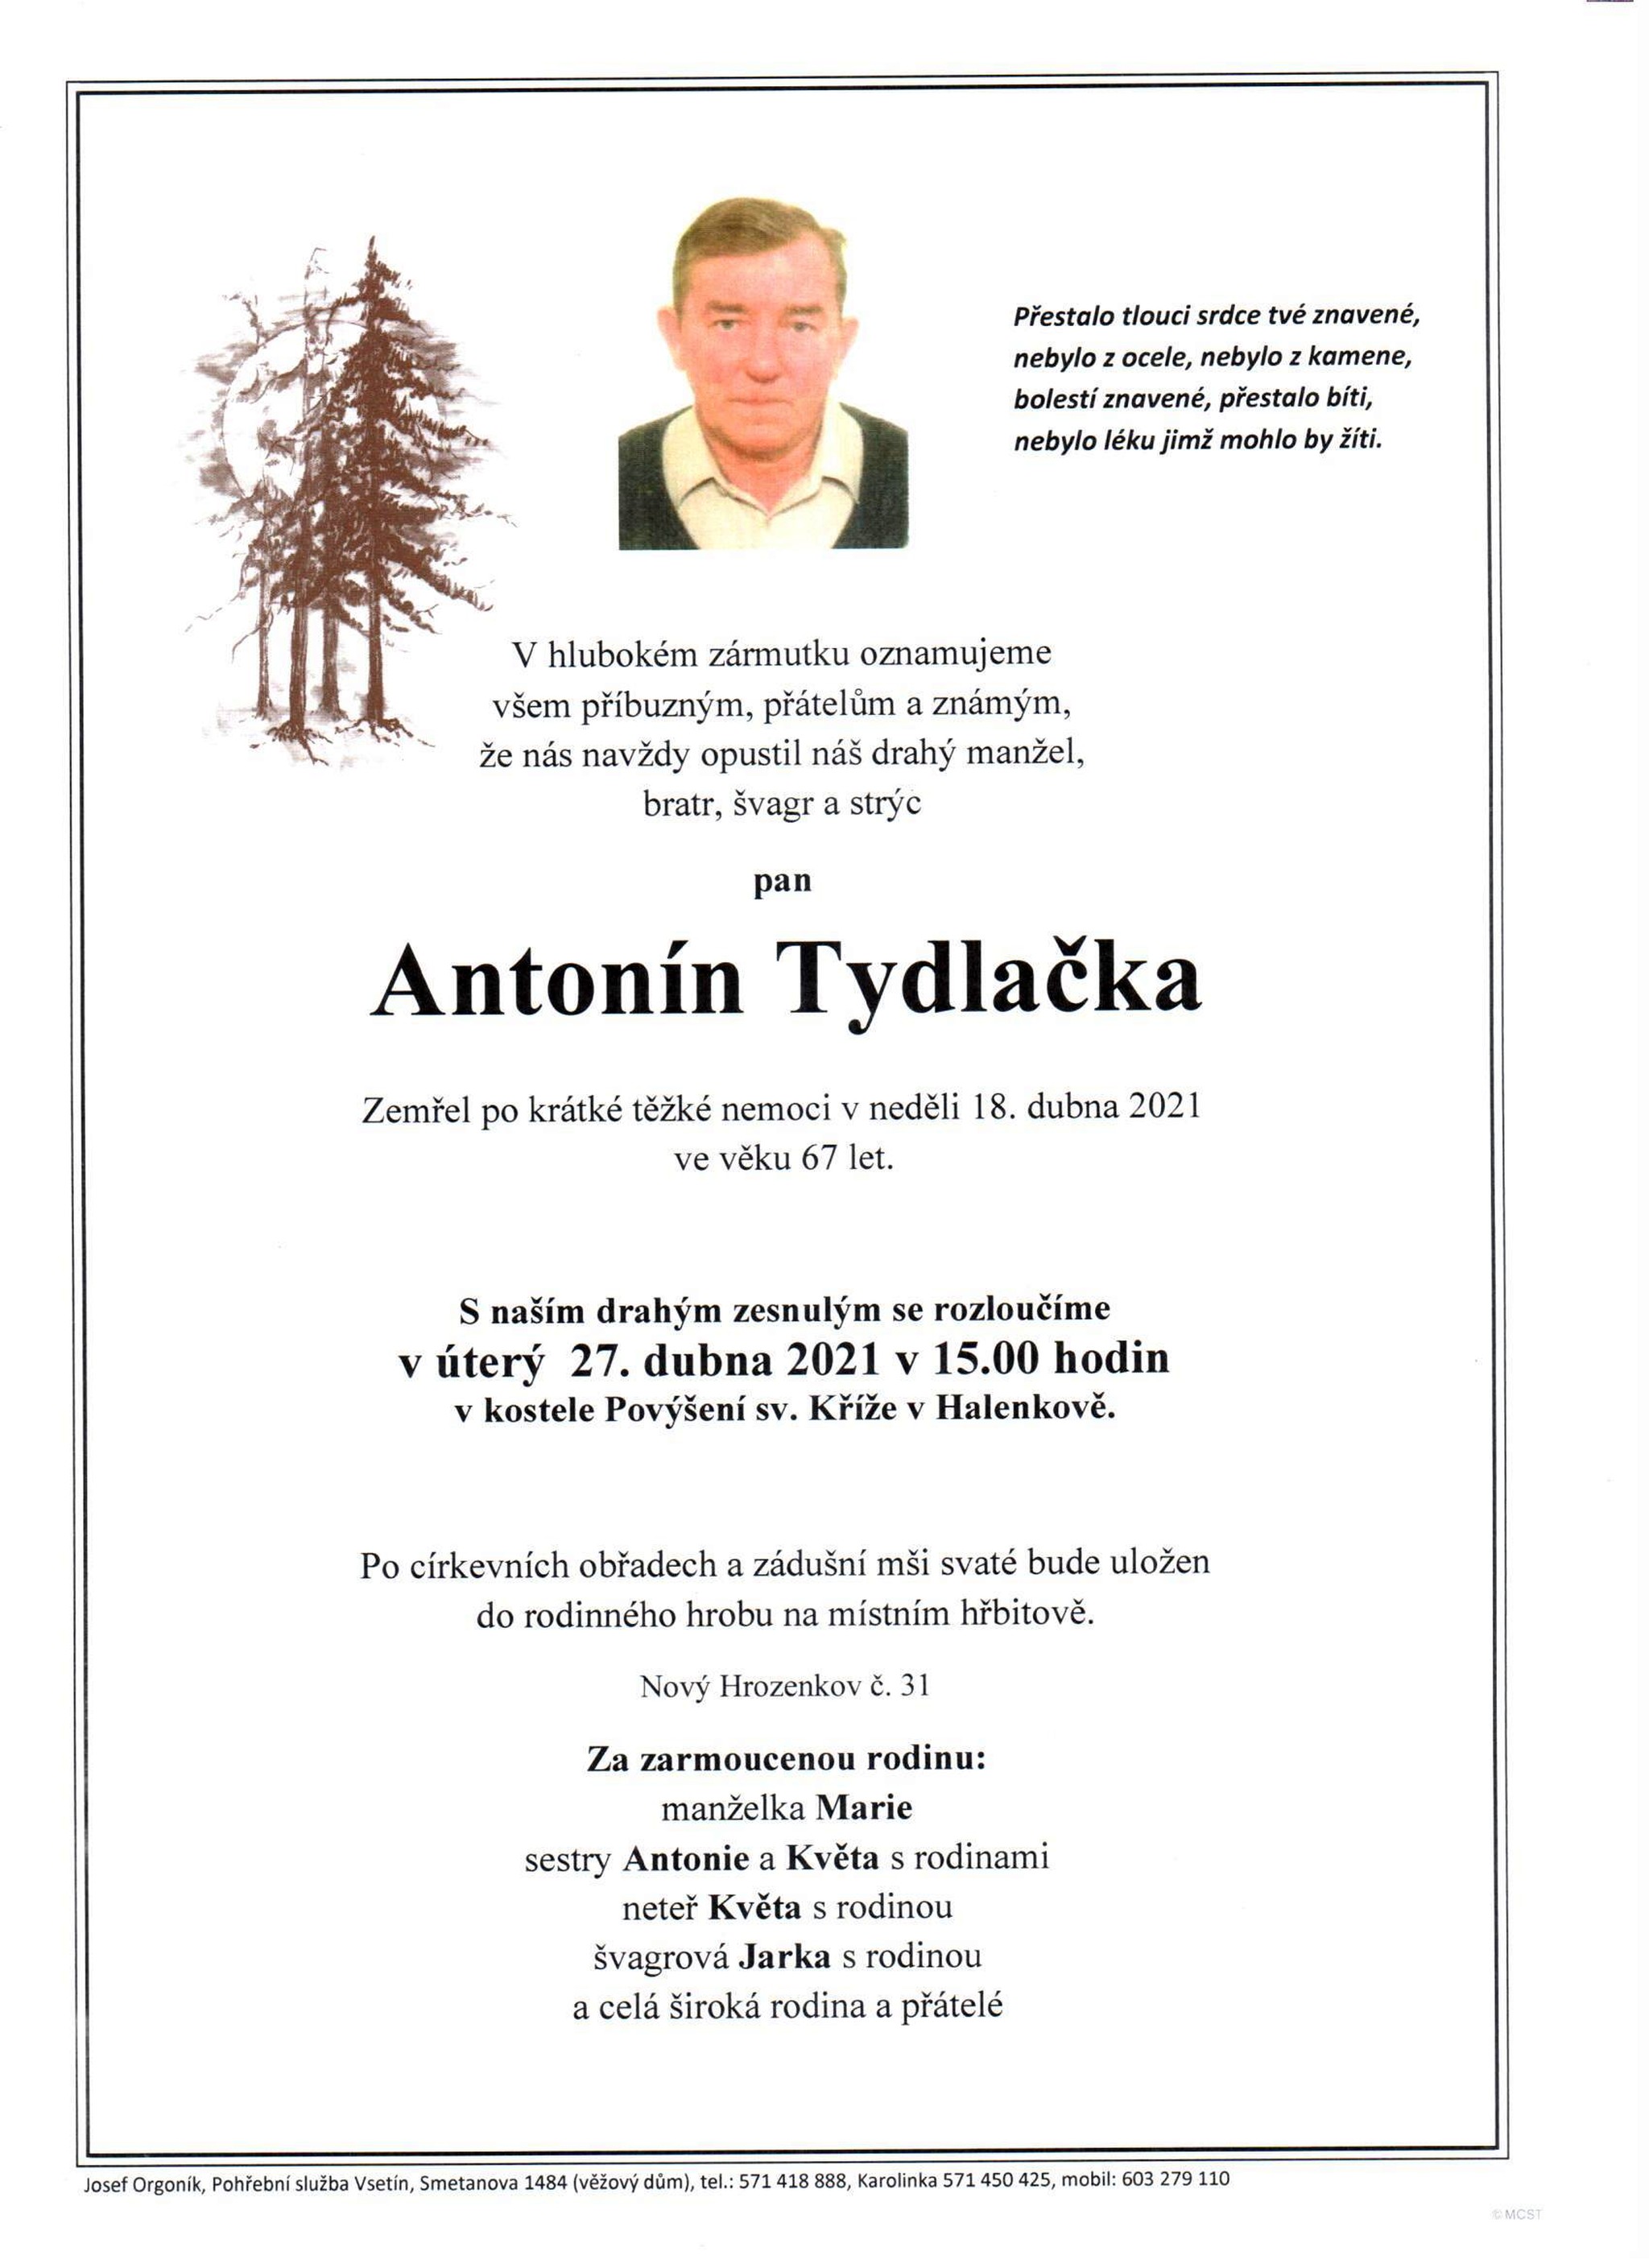 Antonín Tydlačka